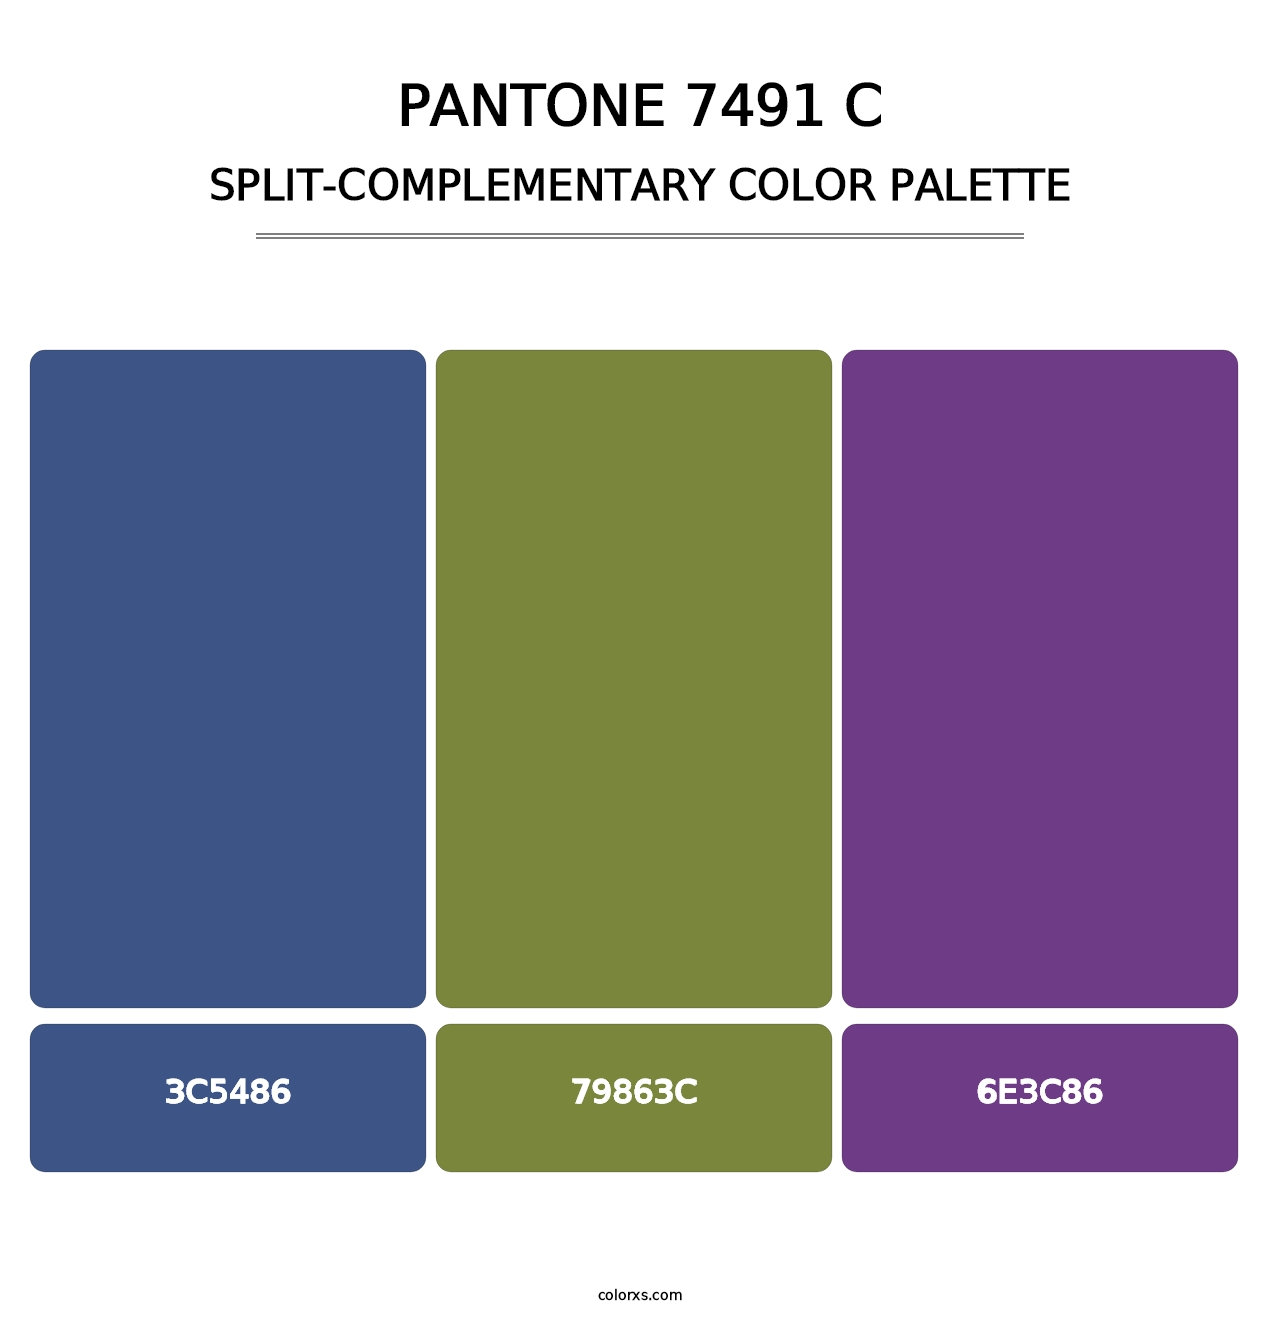 PANTONE 7491 C - Split-Complementary Color Palette